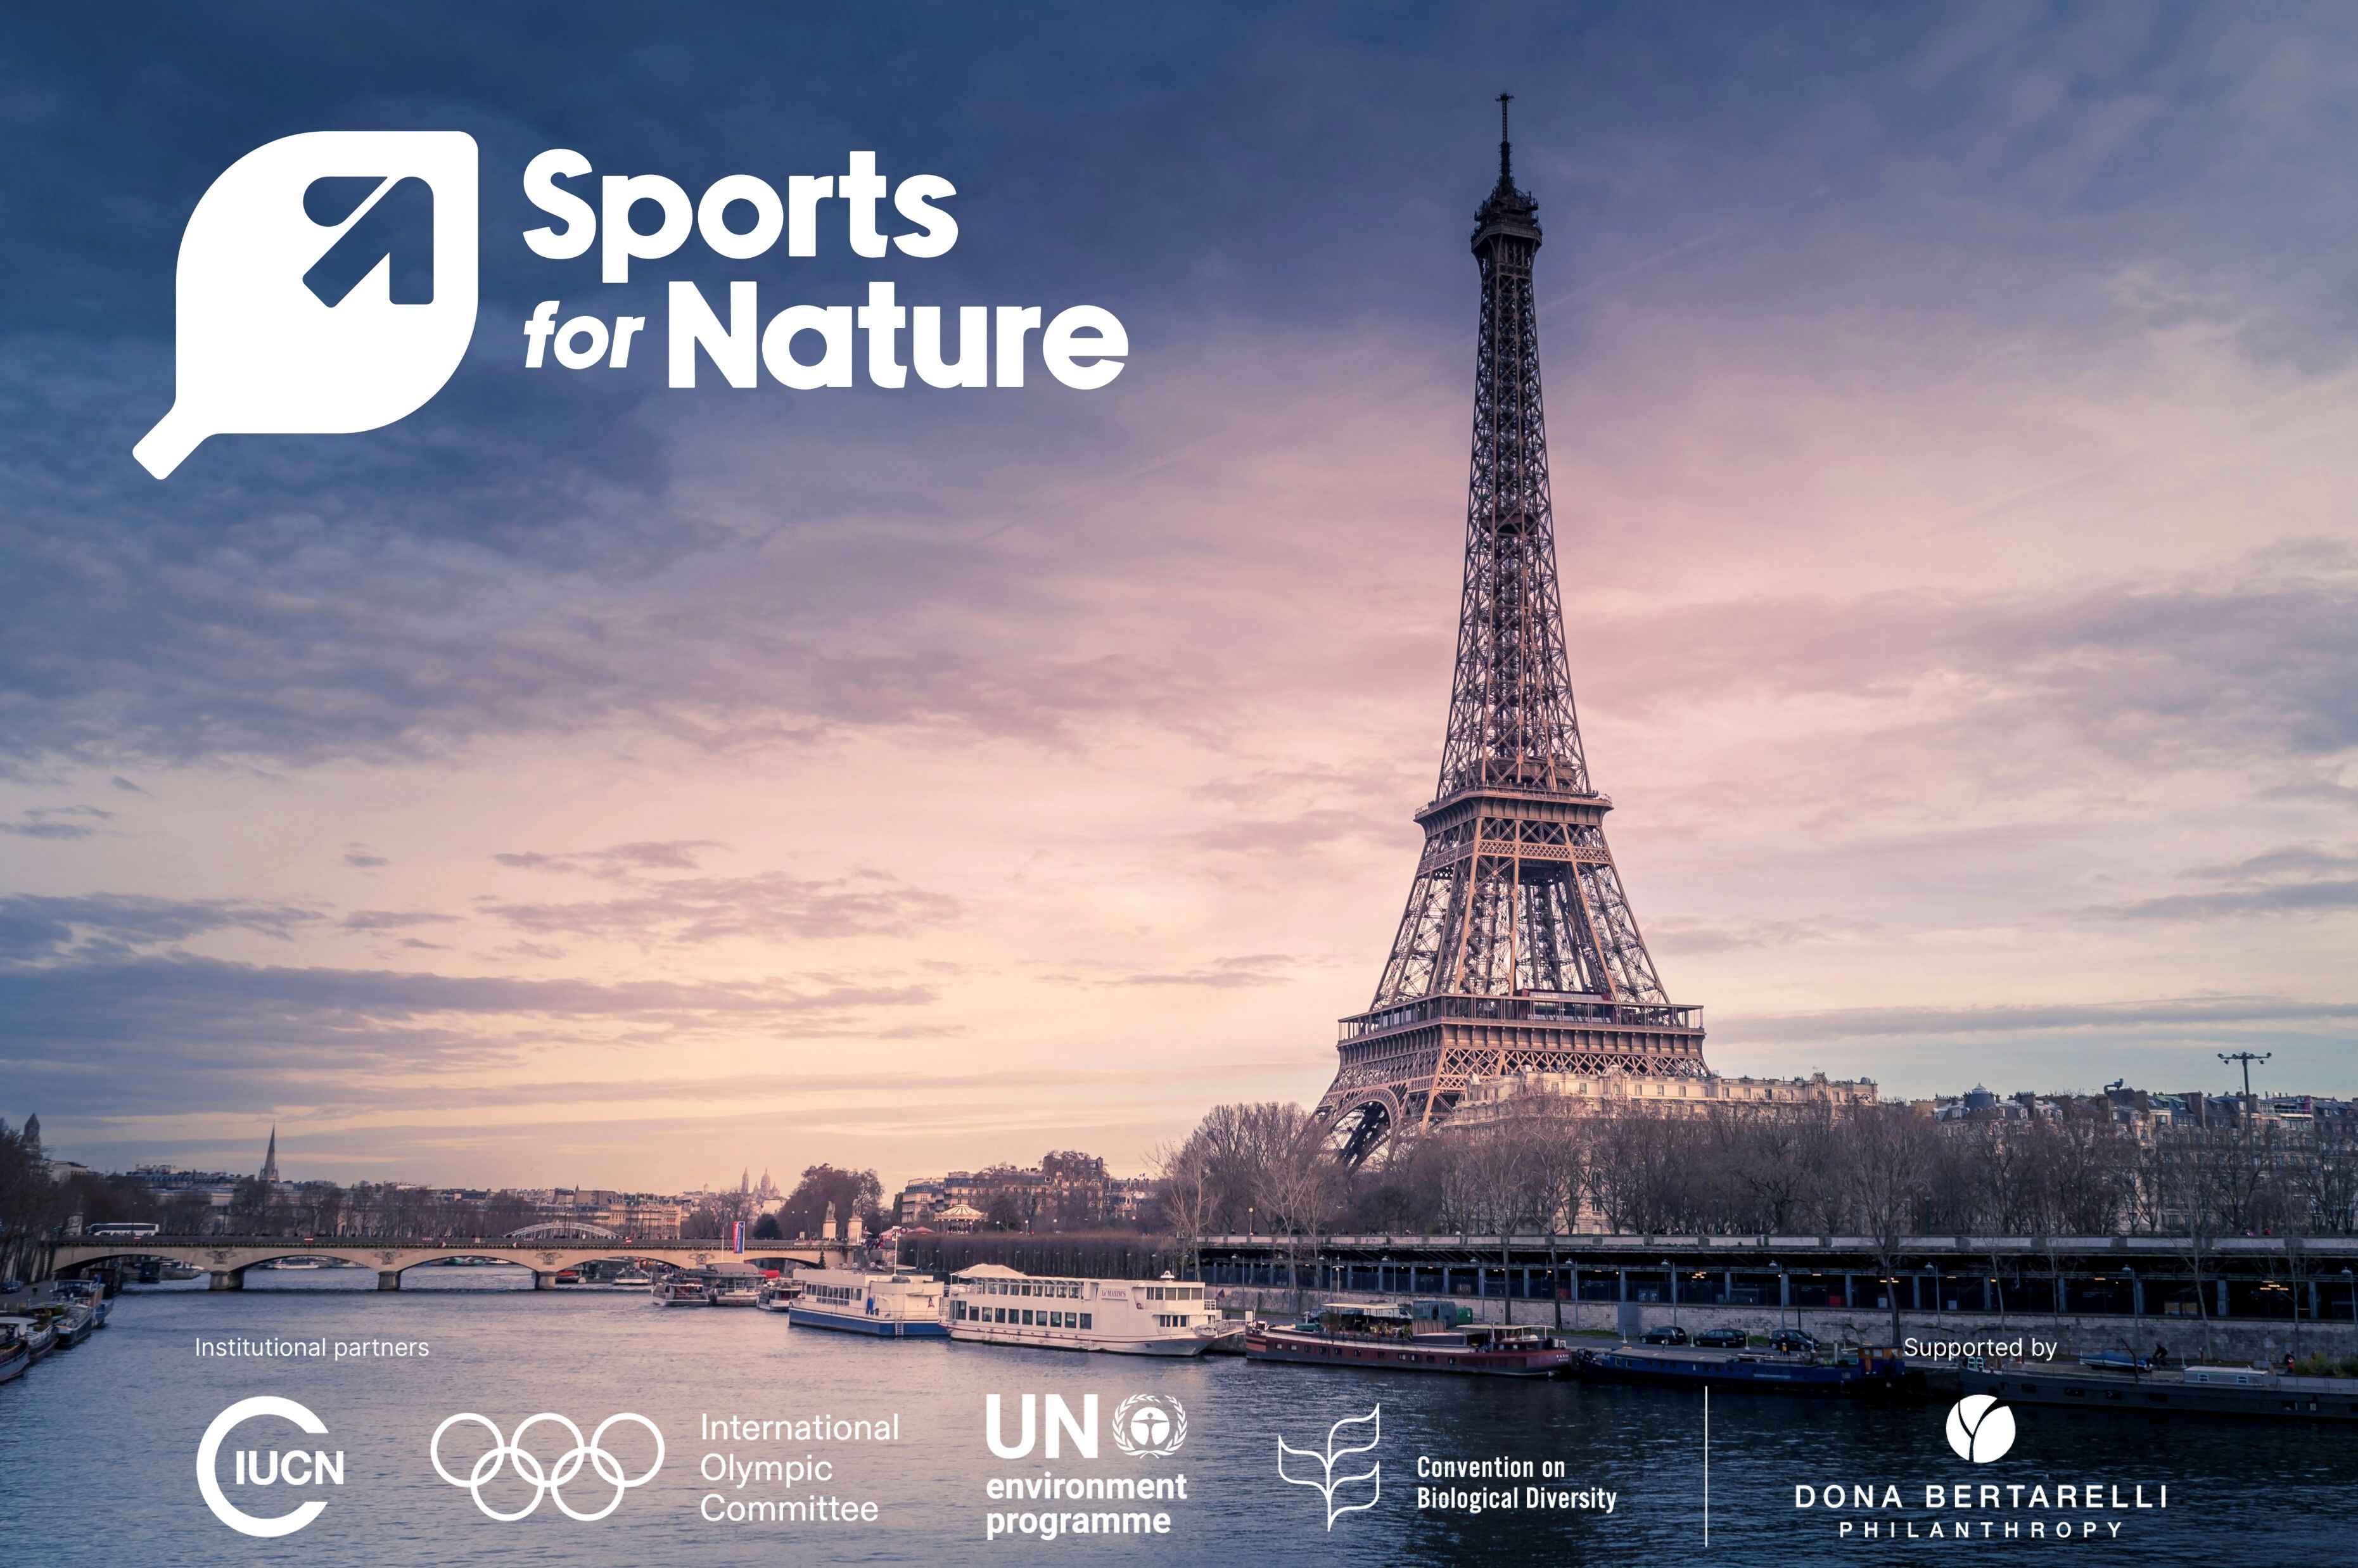 “自然运动”倡议聚焦体育和奥林匹克运动中的生物多样性 - 新闻